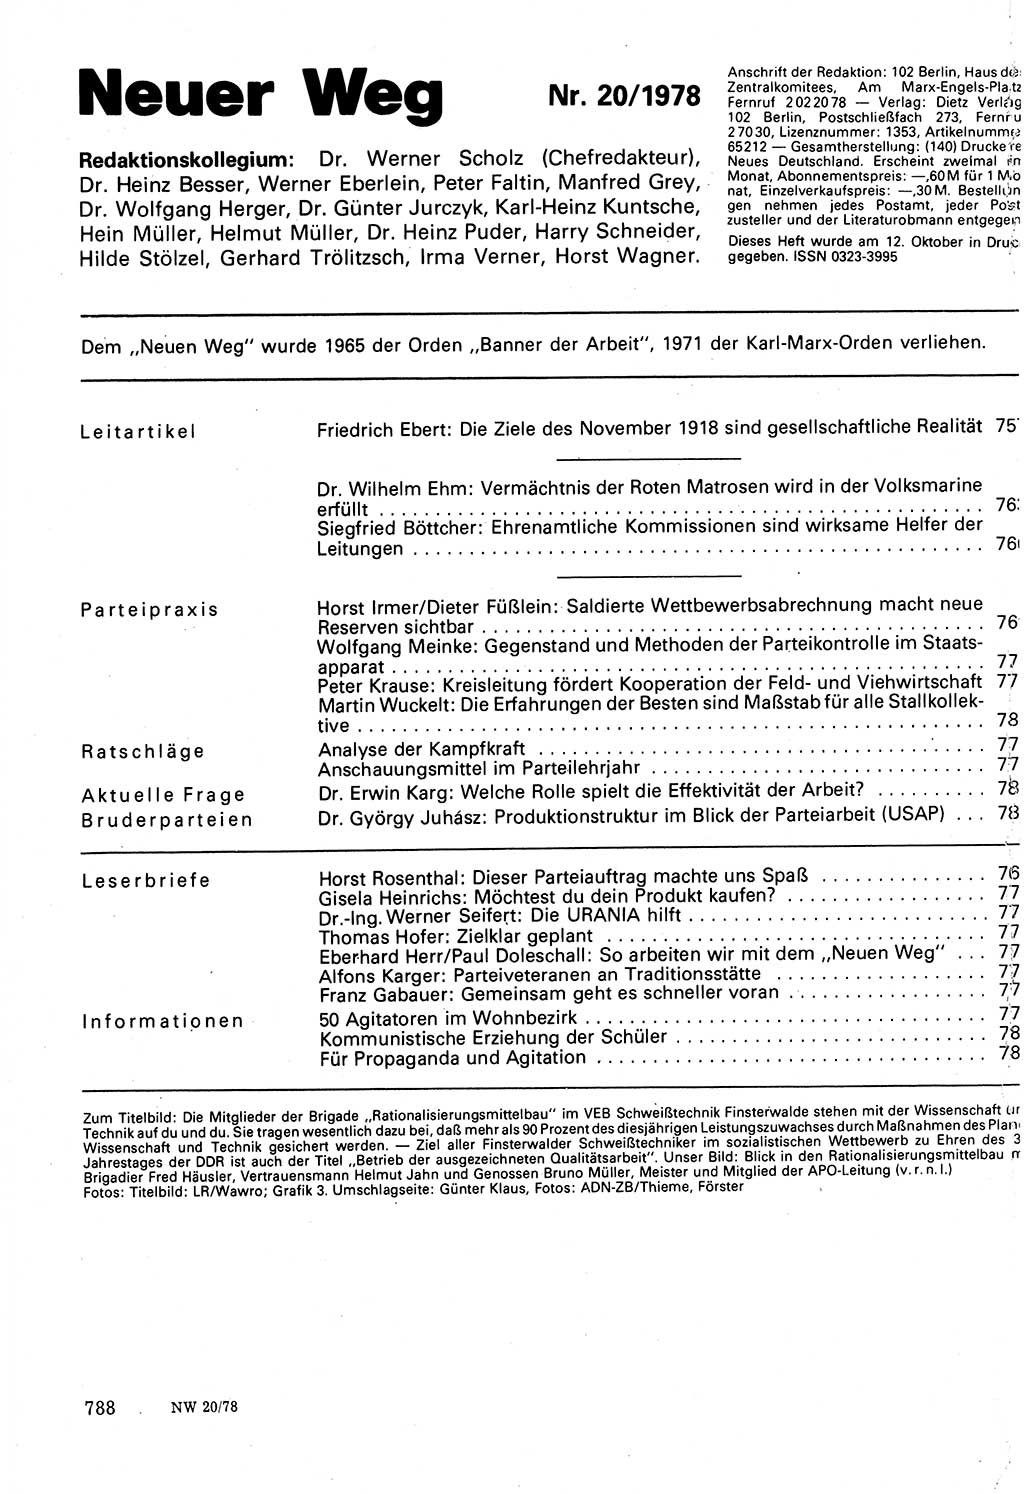 Neuer Weg (NW), Organ des Zentralkomitees (ZK) der SED (Sozialistische Einheitspartei Deutschlands) für Fragen des Parteilebens, 33. Jahrgang [Deutsche Demokratische Republik (DDR)] 1978, Seite 788 (NW ZK SED DDR 1978, S. 788)